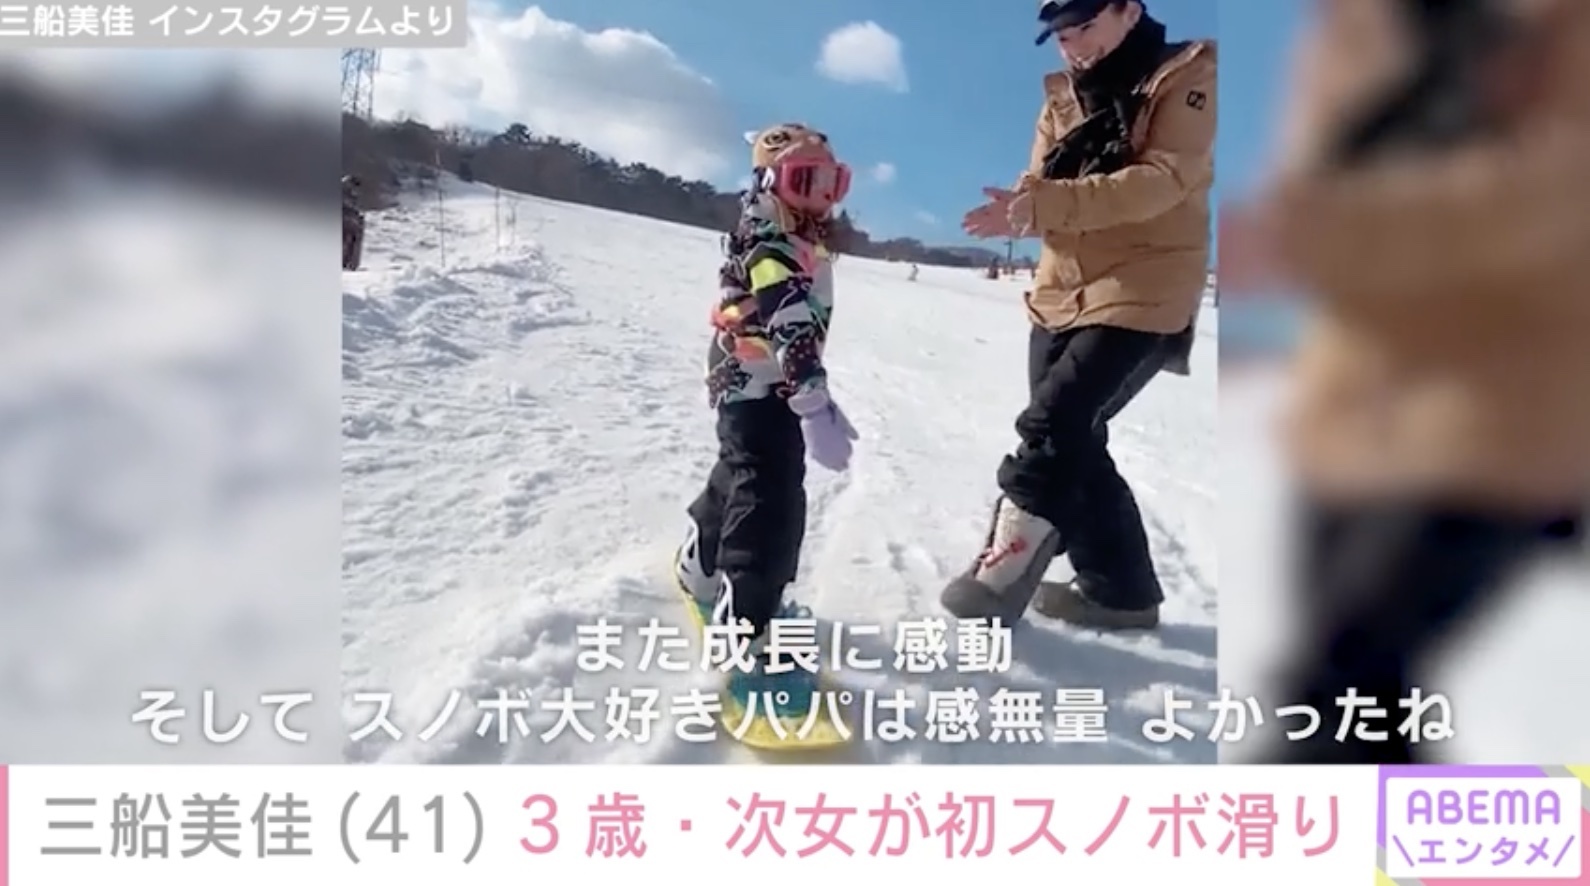 三船美佳、3歳次女が初めてスノーボードで滑る姿を公開「また成長に感動」(ABEMA TIMES)